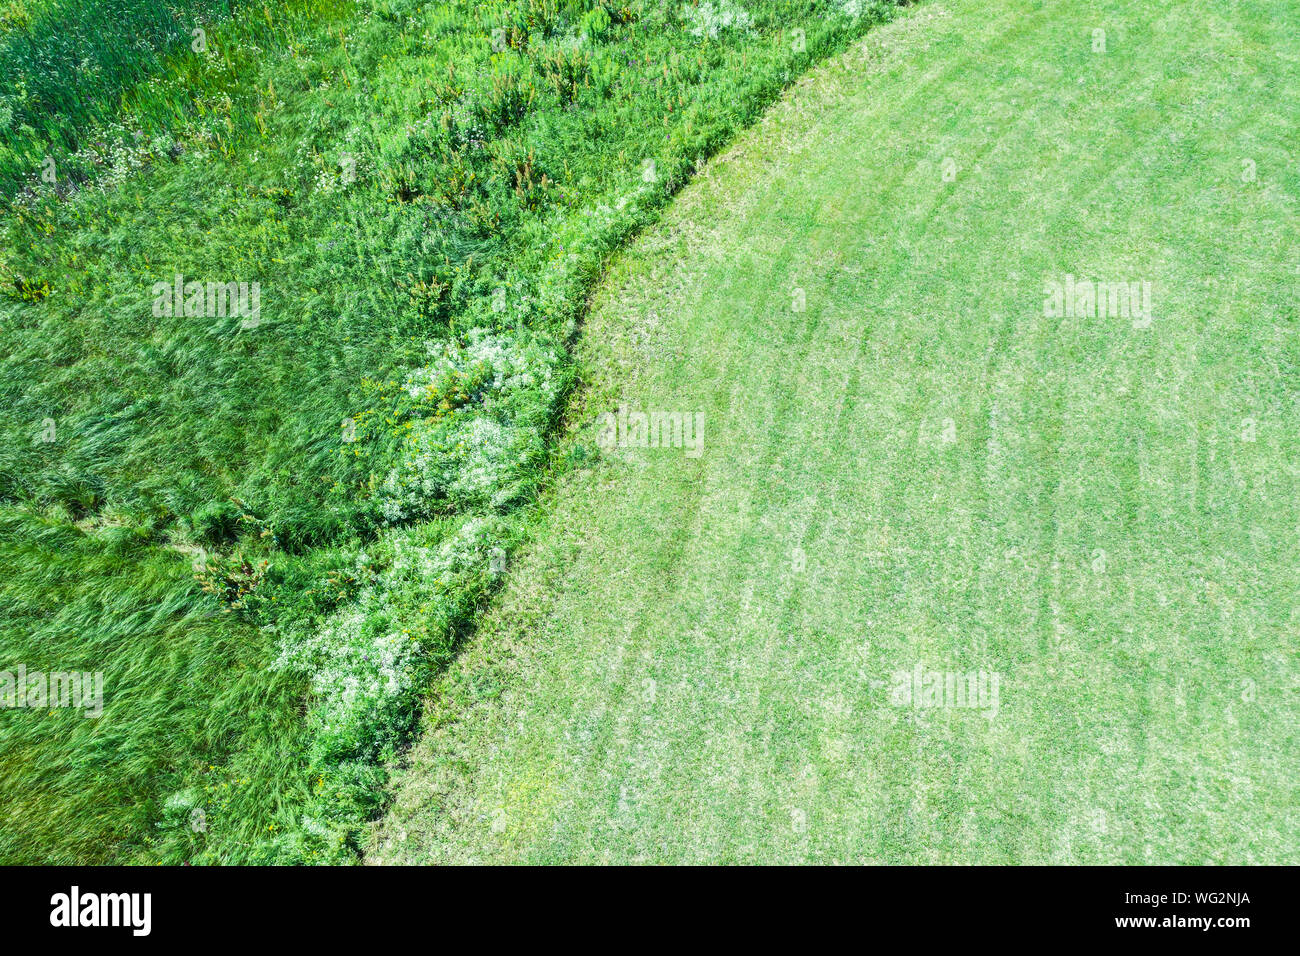 Pelouse partiellement coupés. cadre naturel magnifique fond vert. Photographie aérienne Banque D'Images